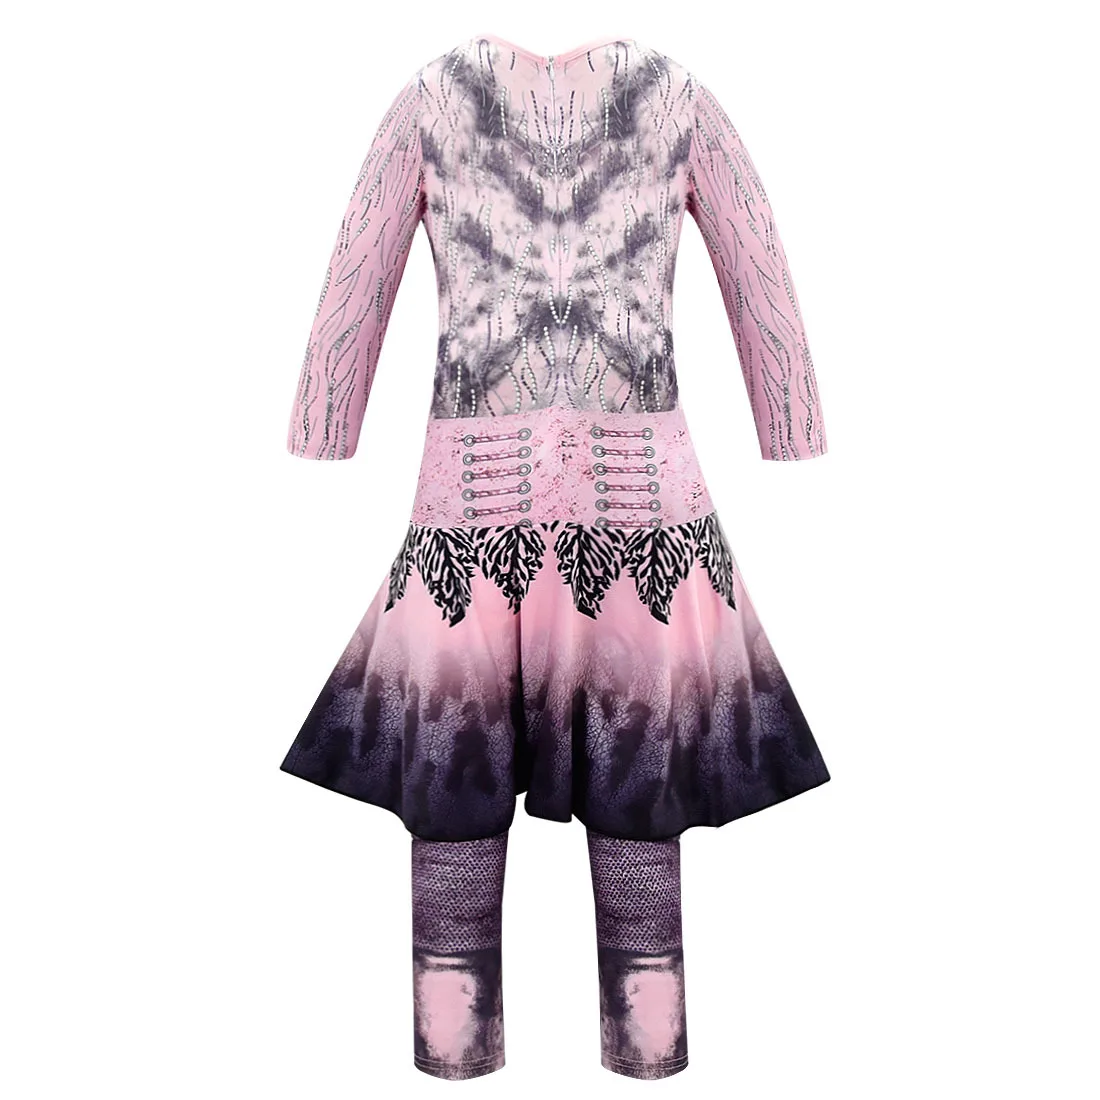 Розовый Одри танцевальные костюмы для девочек костюмы на Хэллоуин для детей модные вечерние женские костюм Иви изображением героев фильма «наследники» 3 Mal косплейный фантазийный костюм